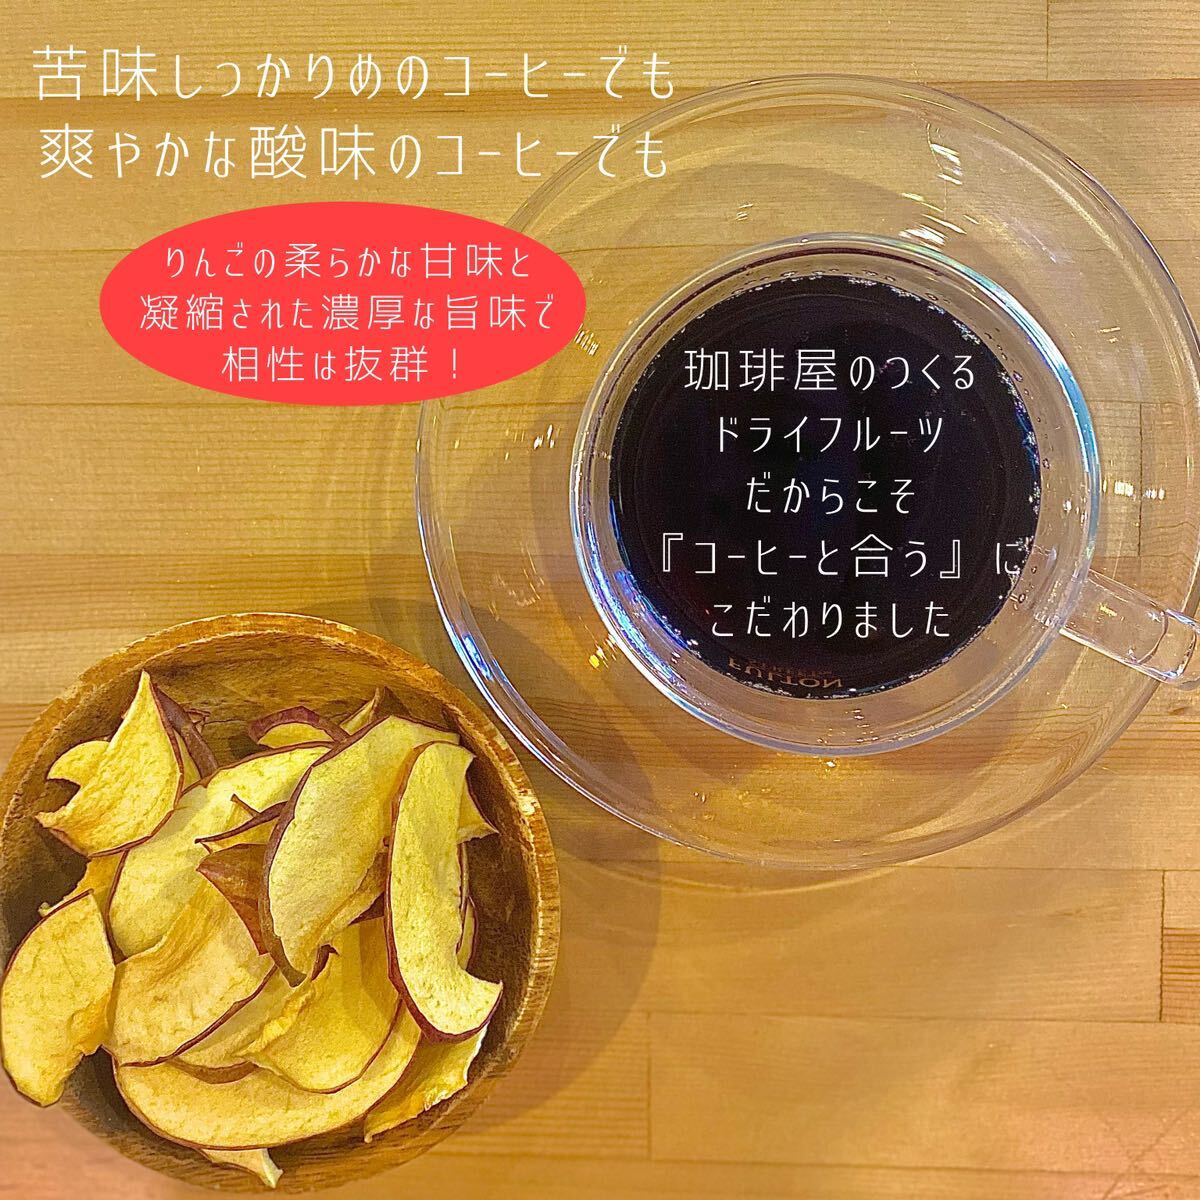 [3 пакет ] Aomori префектура производство яблоко chip s солнечный ..120g без добавок сухофрукт dry яблоко яблоко chip s сахар не использование 